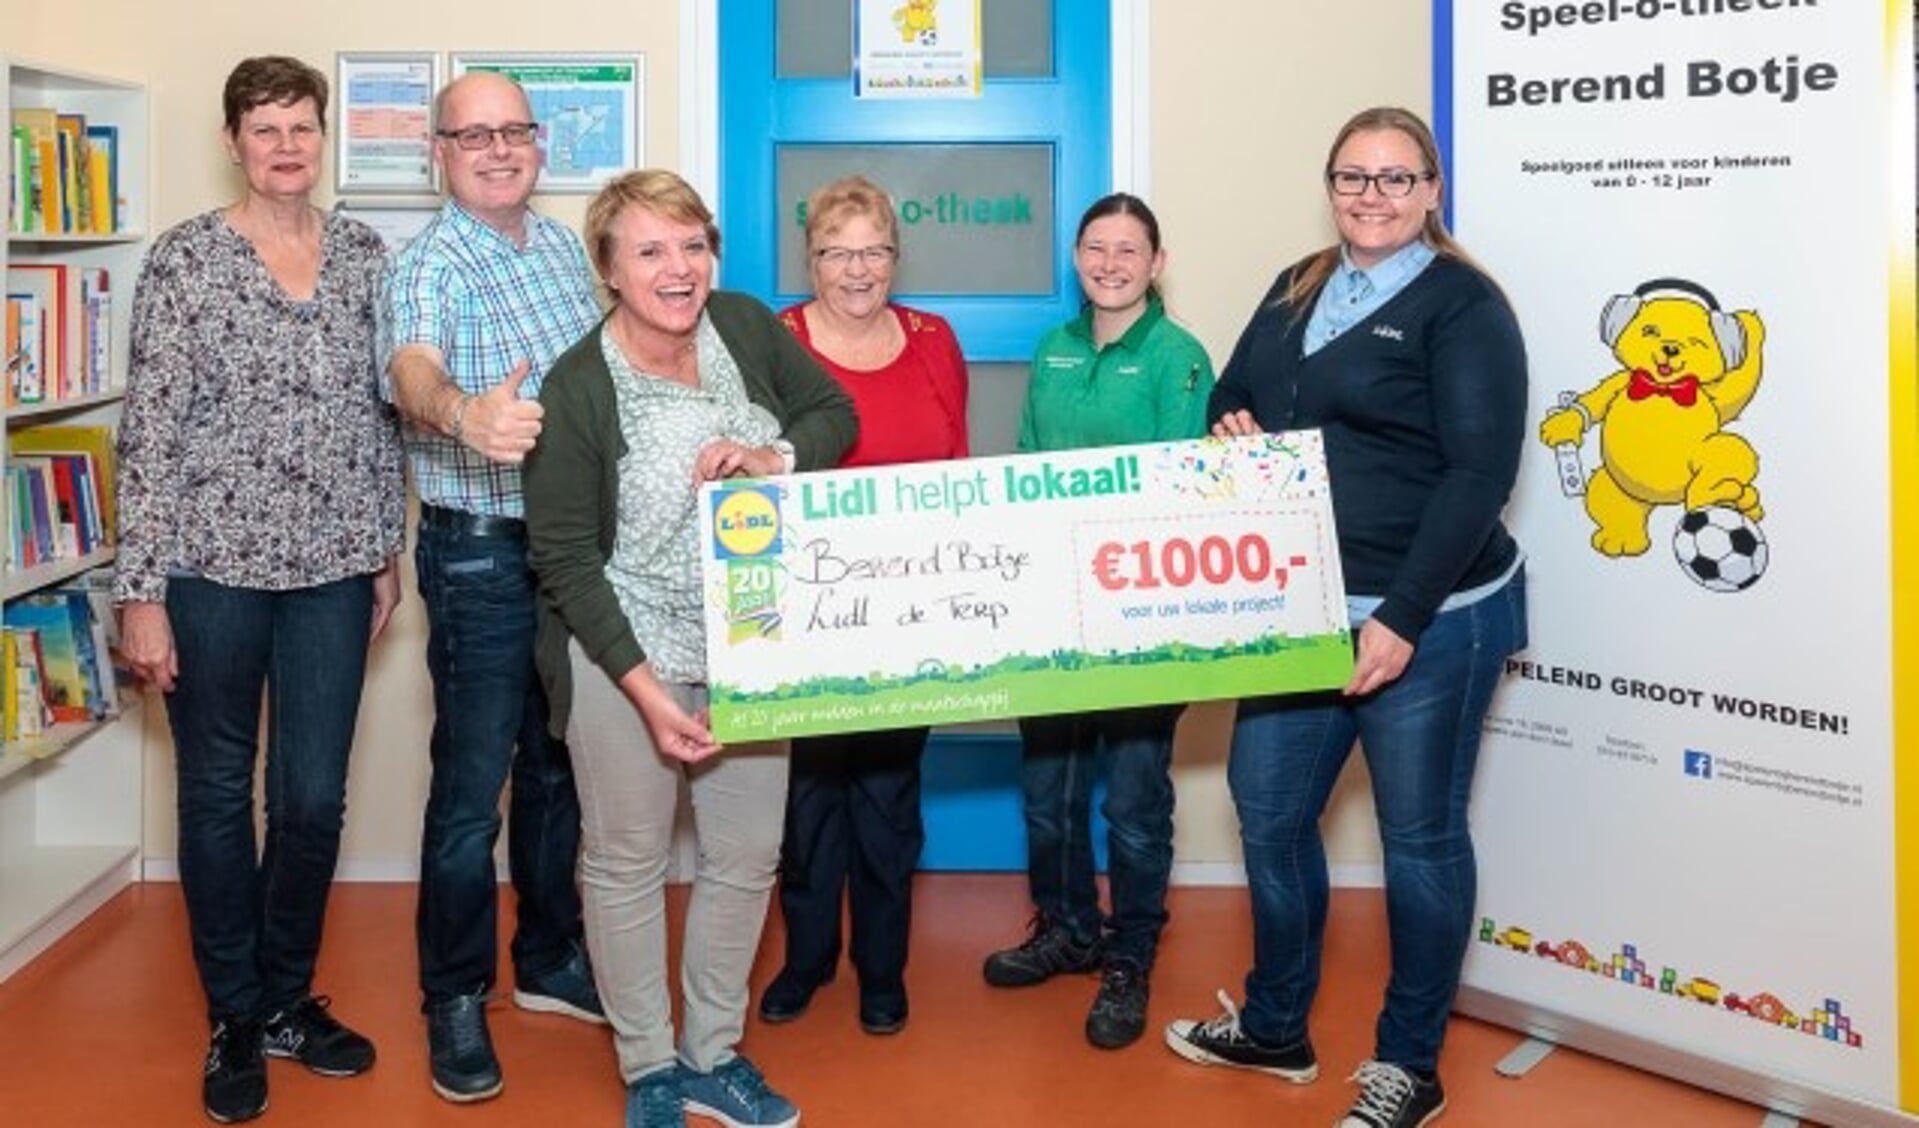 Speel-o-theek Berend Botje ontving een cheque ter waarde van 1.000 euro van supermarkt Lidl. (Foto: Petra Muilenburg Fotografie) 